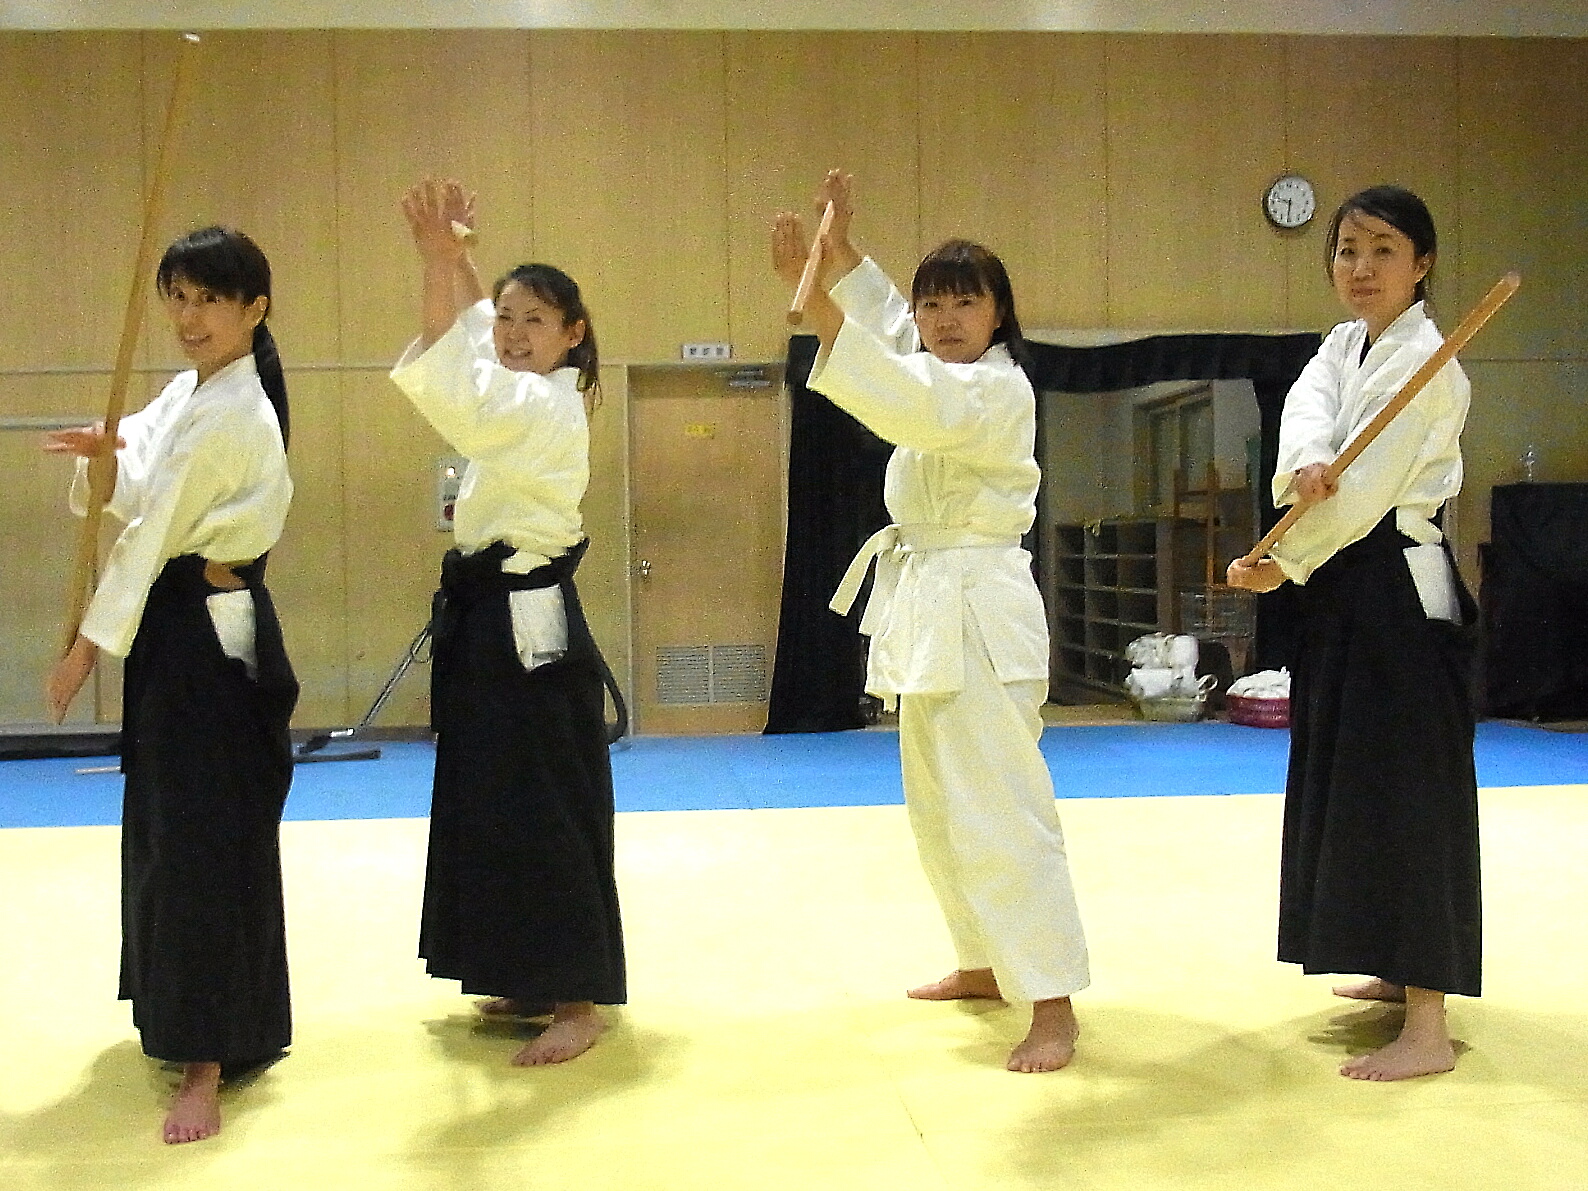 合気杖は躍動感のある美しい武術で会員の女性に人気です 袴姿もとても美しいです 大阪 春風会合気道aikidoは大阪 市住吉区の三稜中学挌技室で稽古しています